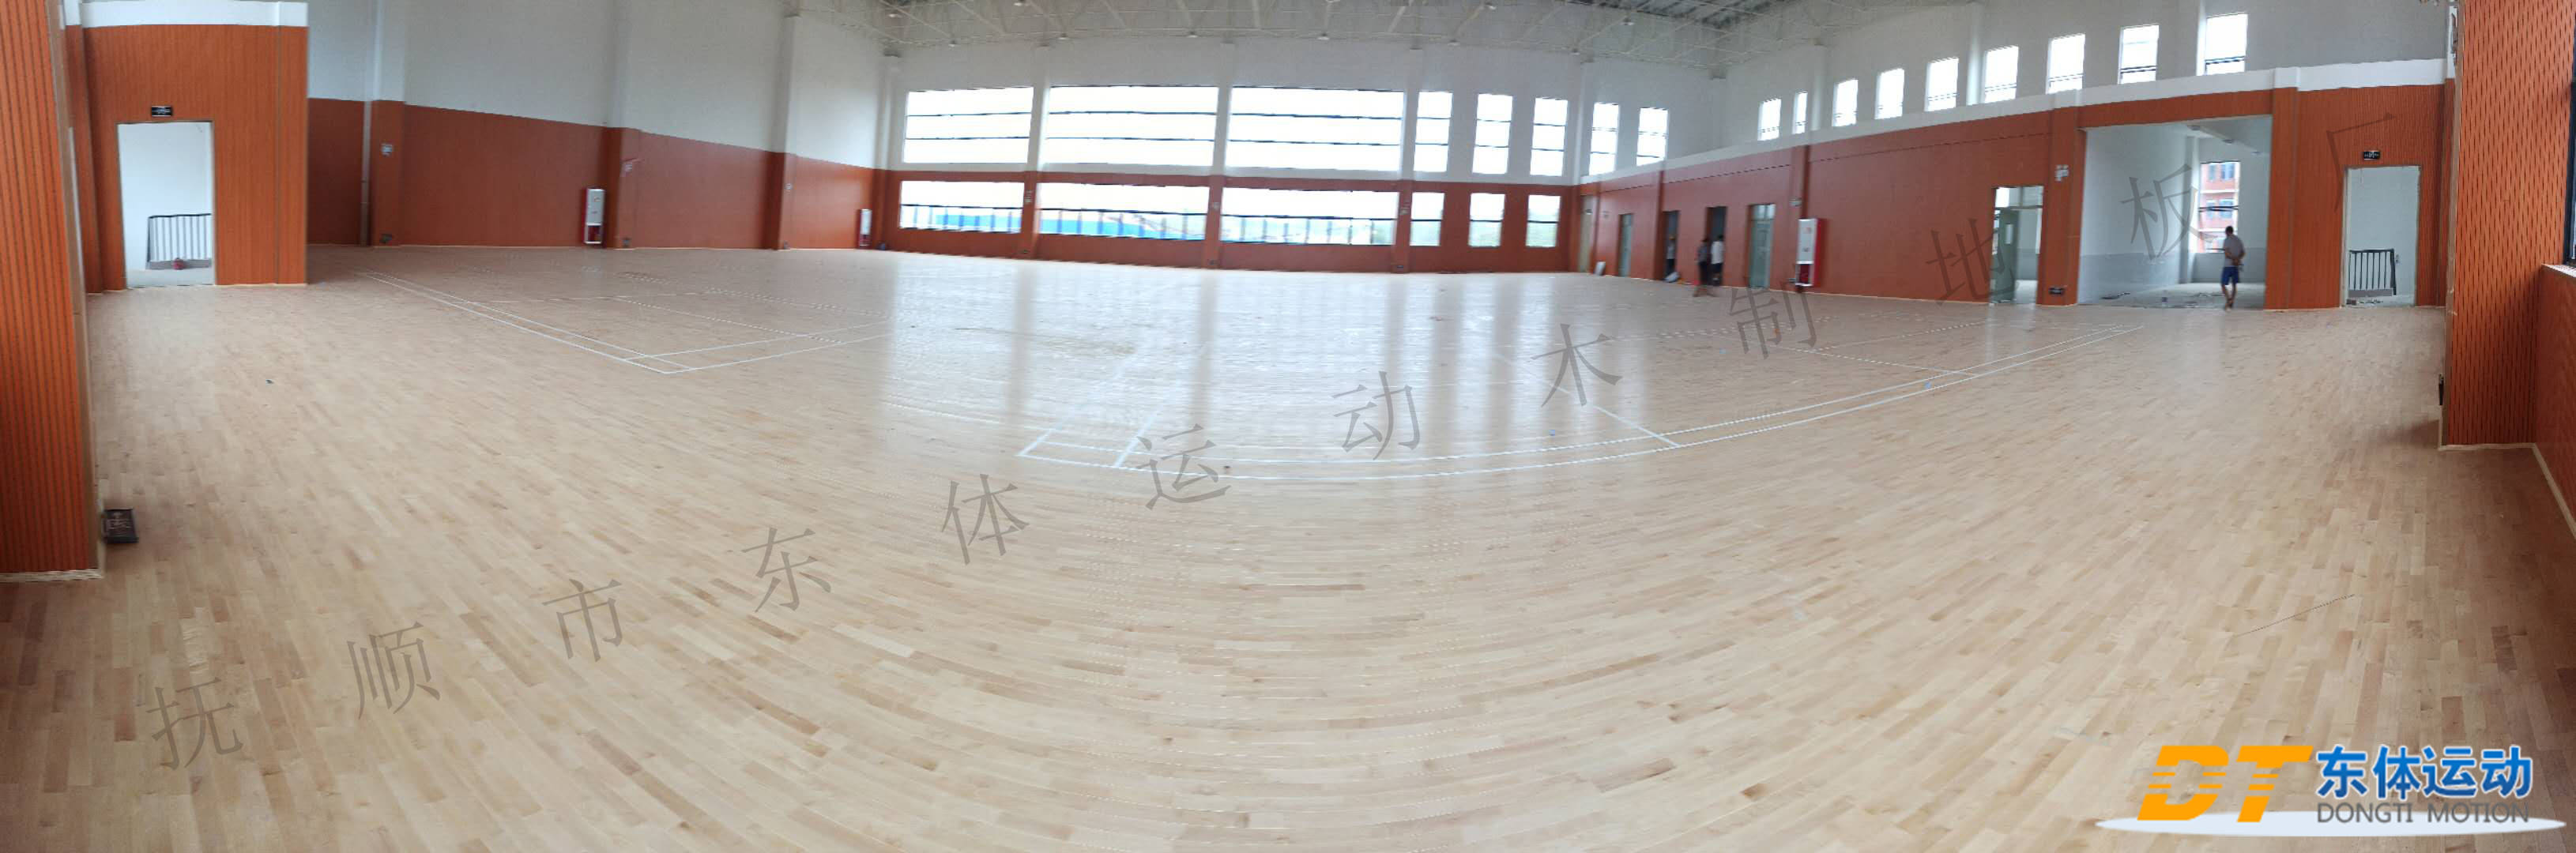 木地板篮球场木地板|篮球场木地板滑的防滑妙招